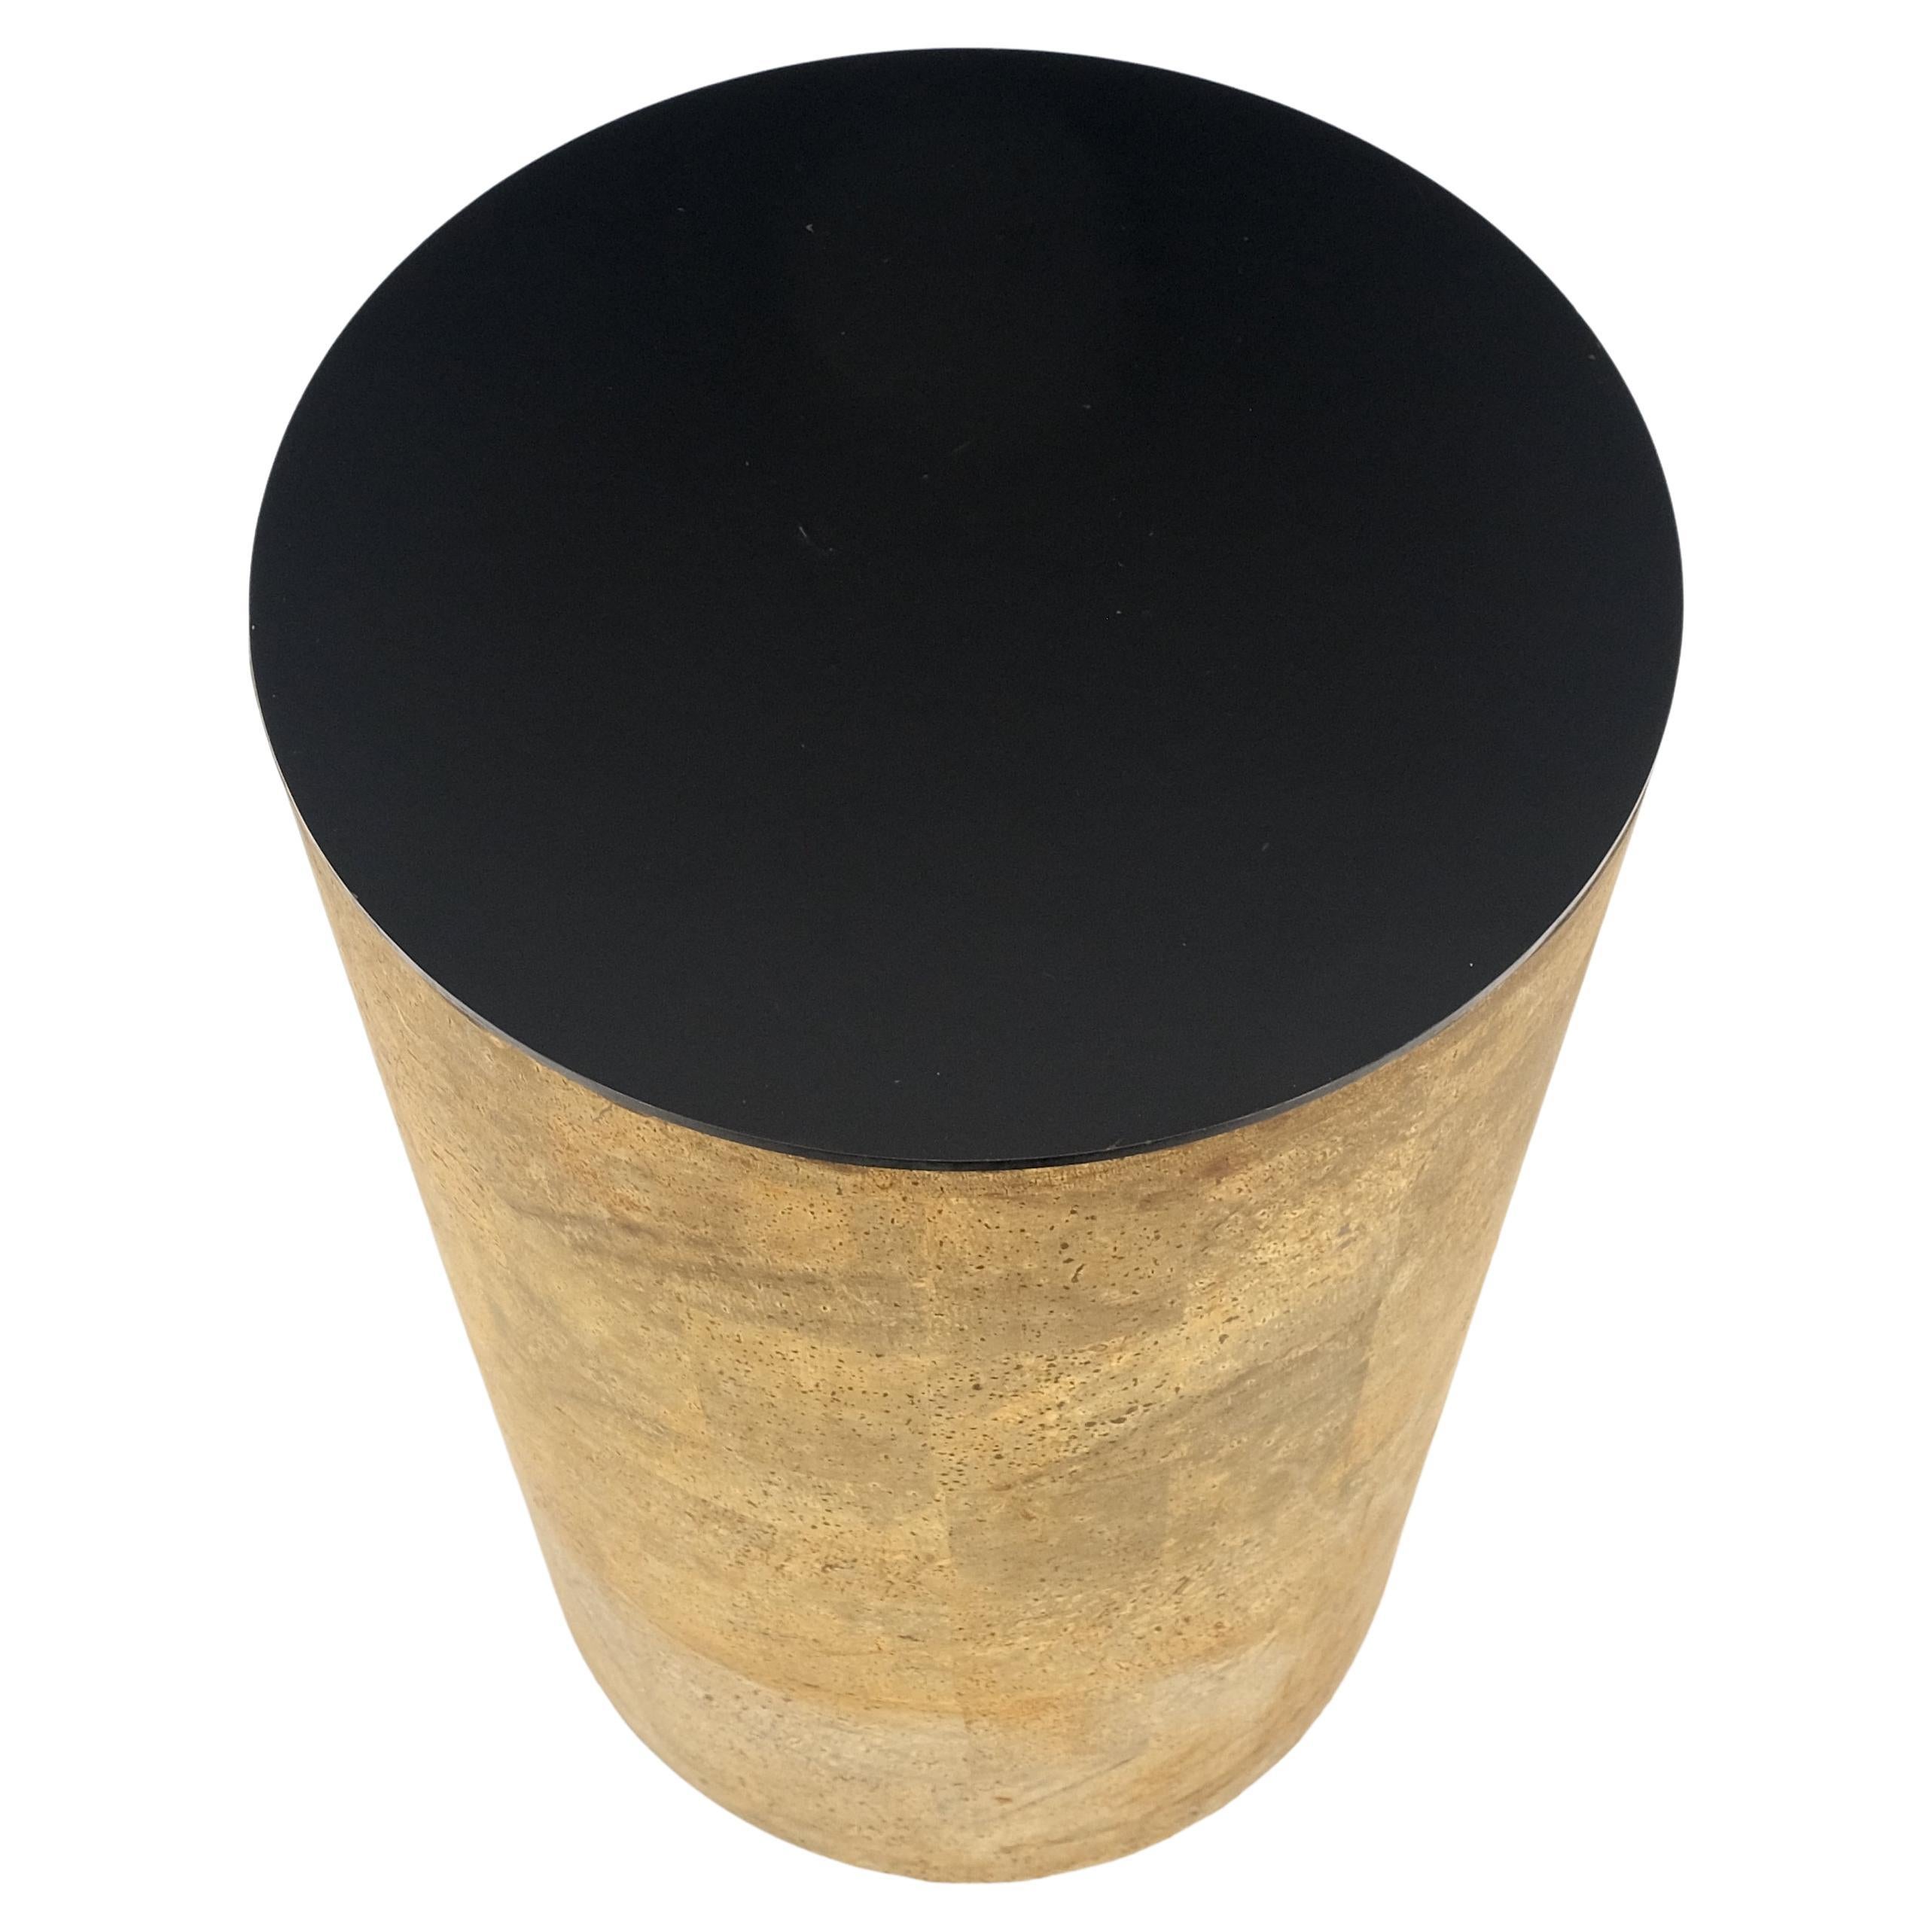 Guéridon moderne en faux bambou de 30 po de hauteur, avec cylindre rond et dessus en stratifié noir 